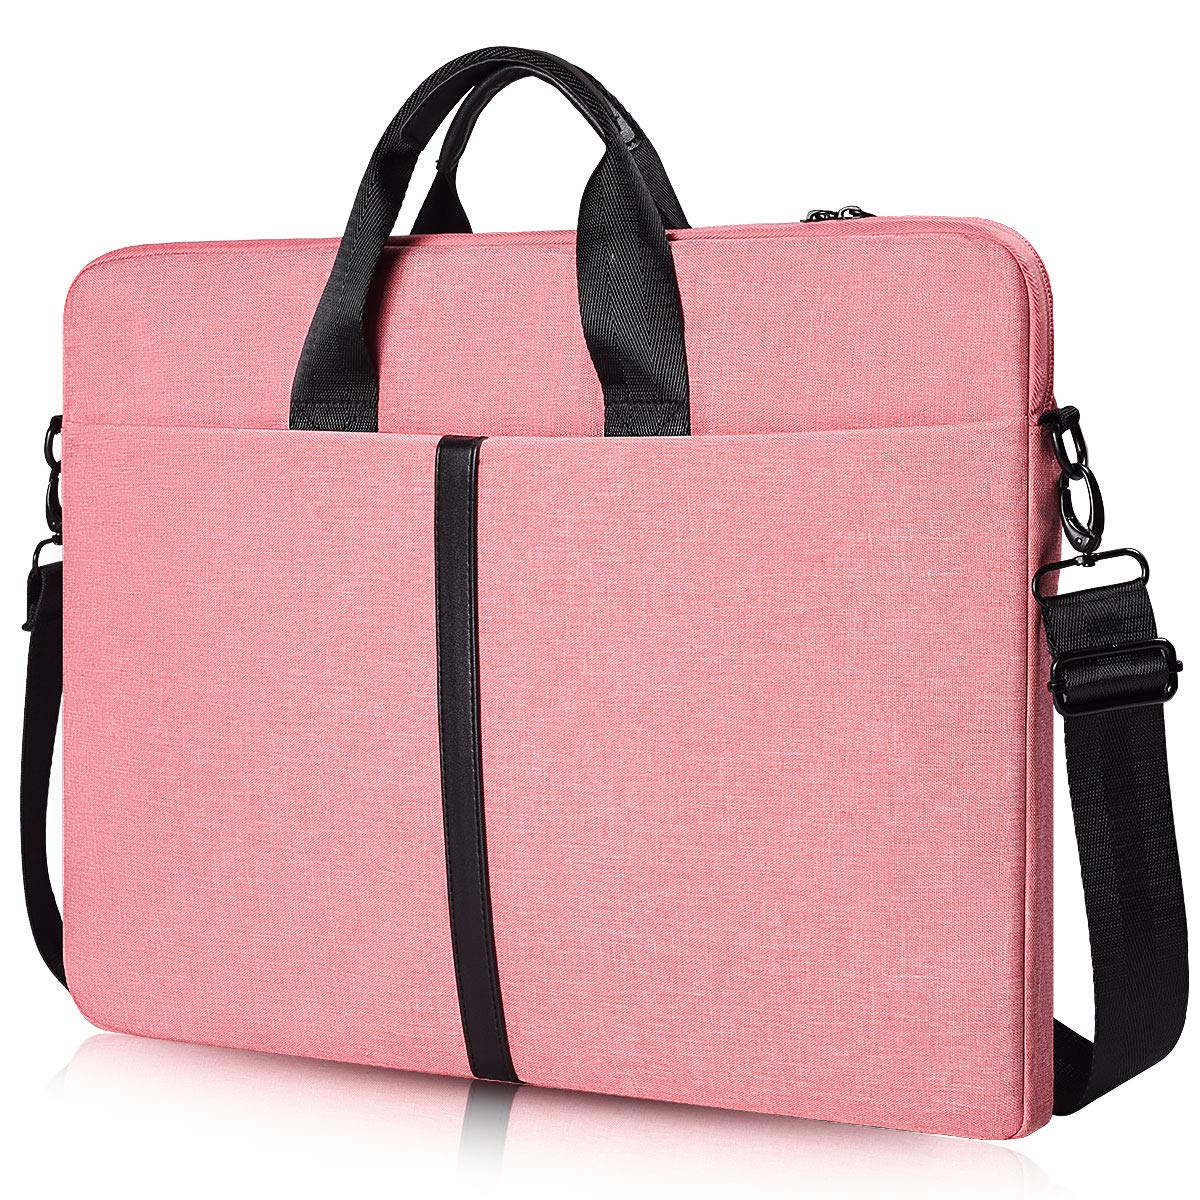 Hidesign Laptop Bags : Buy Hidesign TAN COUGAR 01 RARO Laptop Bag Online |  Nykaa Fashion.